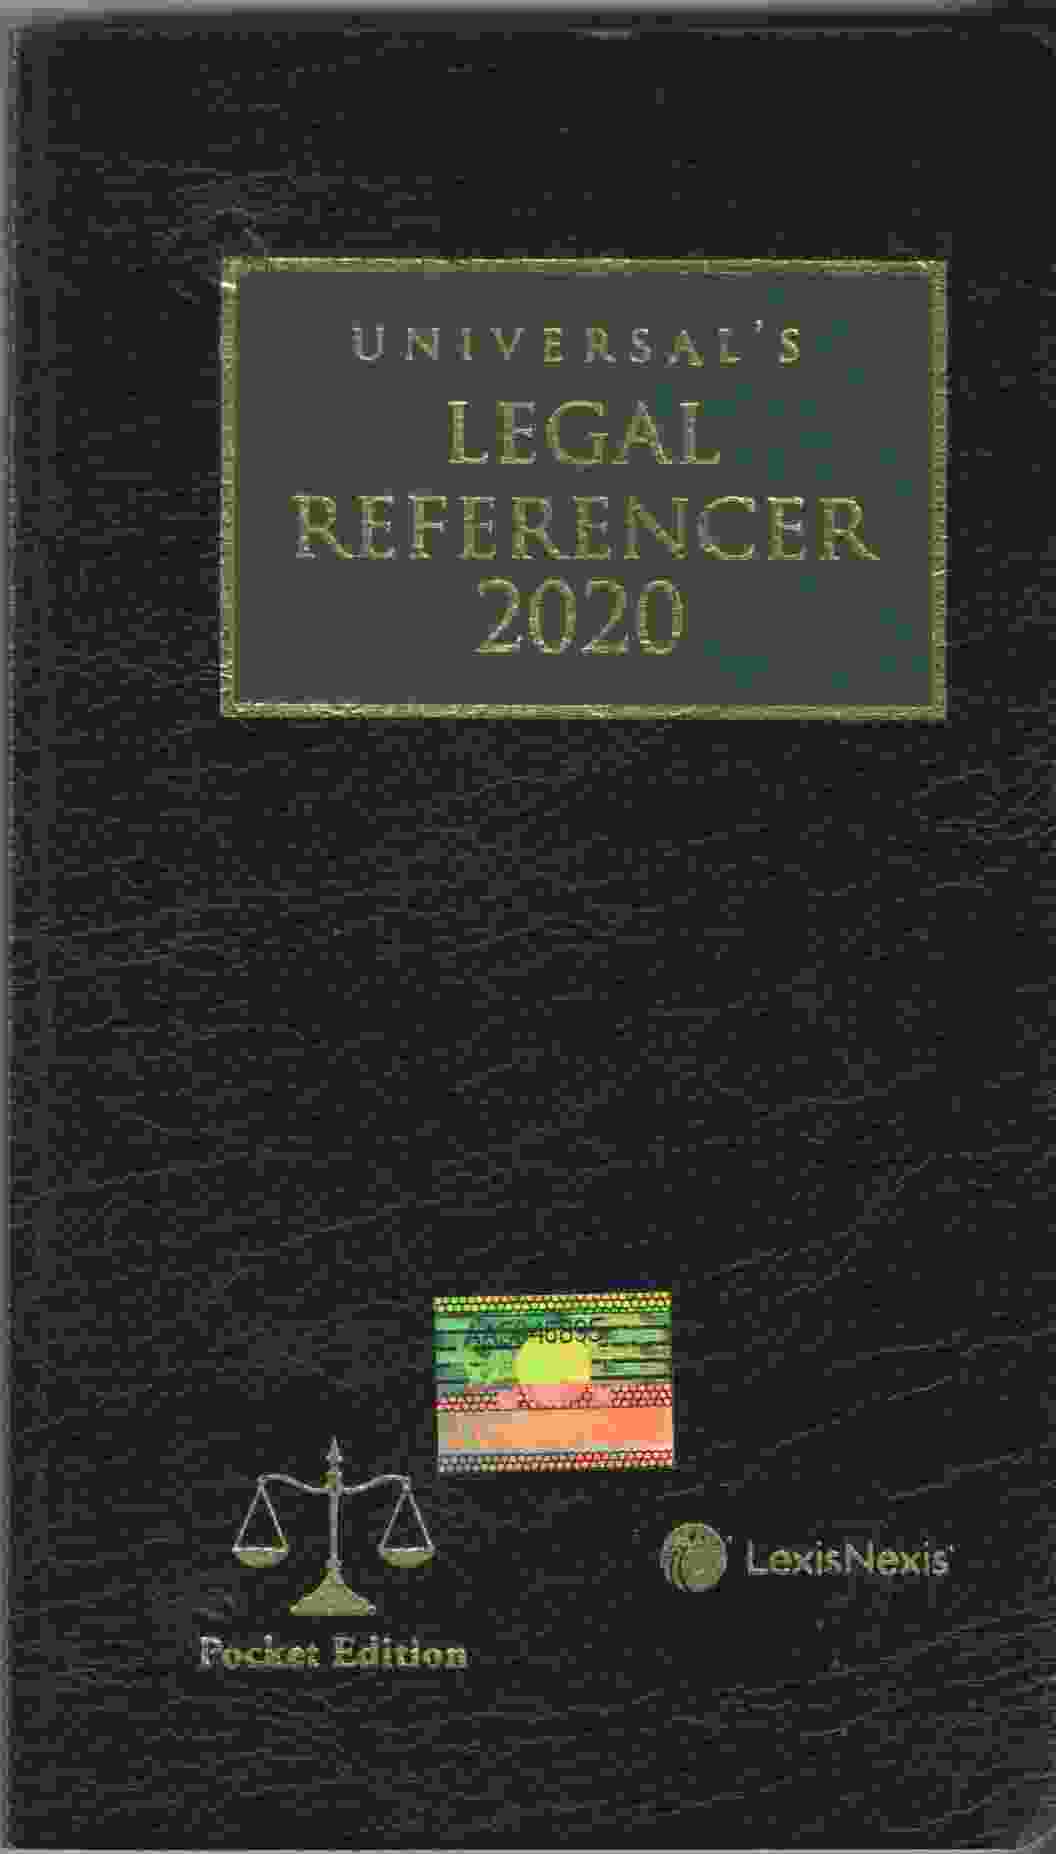 Universals-Legal-Referencer-2020-Pocket-Edition